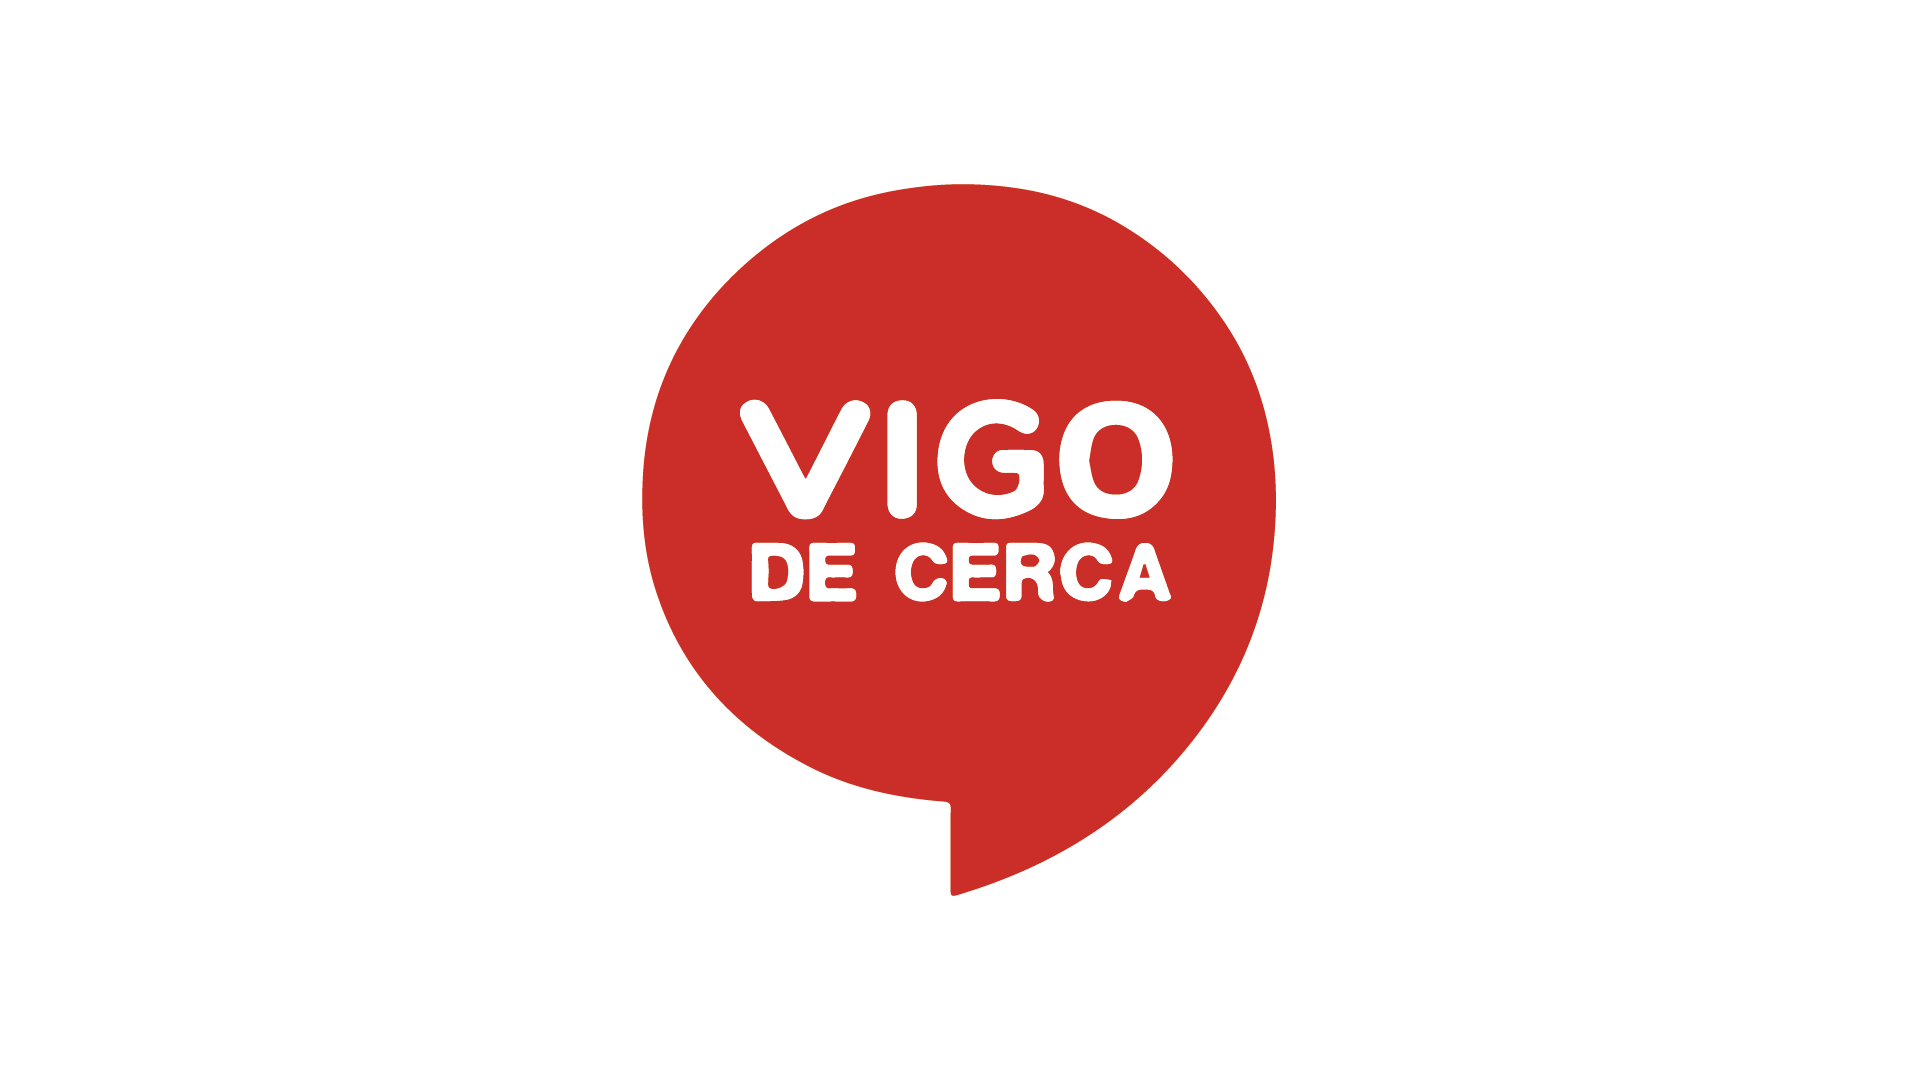 VIGO DE CERCA